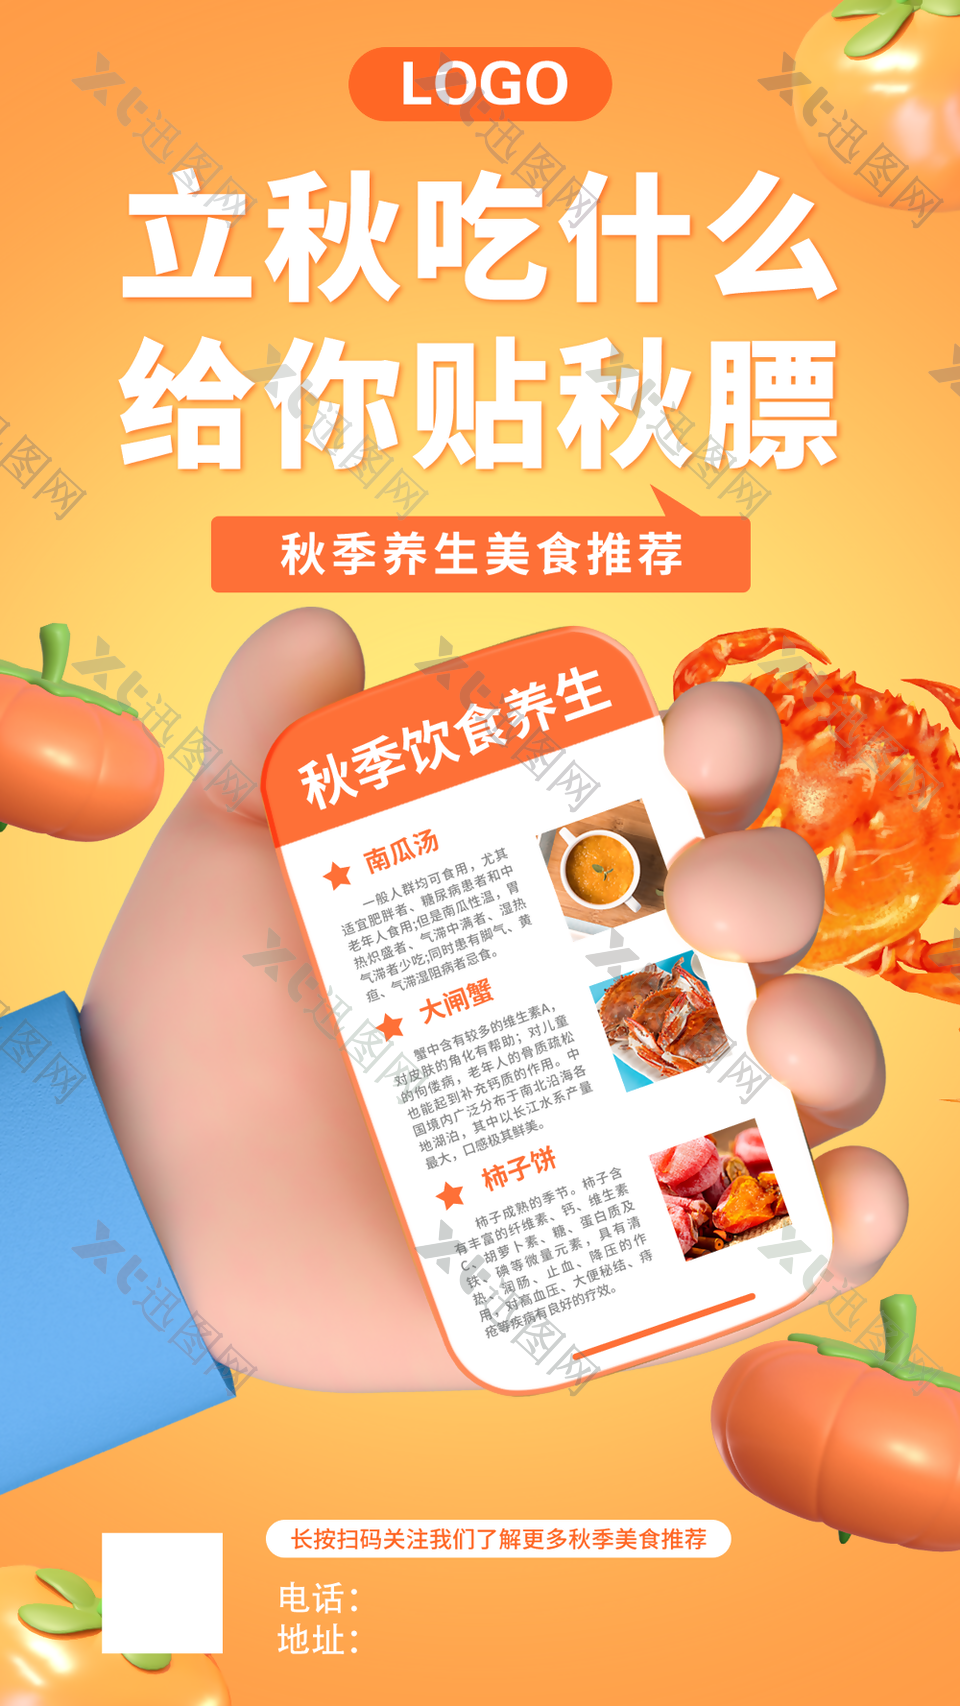 秋季饮食养生美食推荐宣传海报图设计